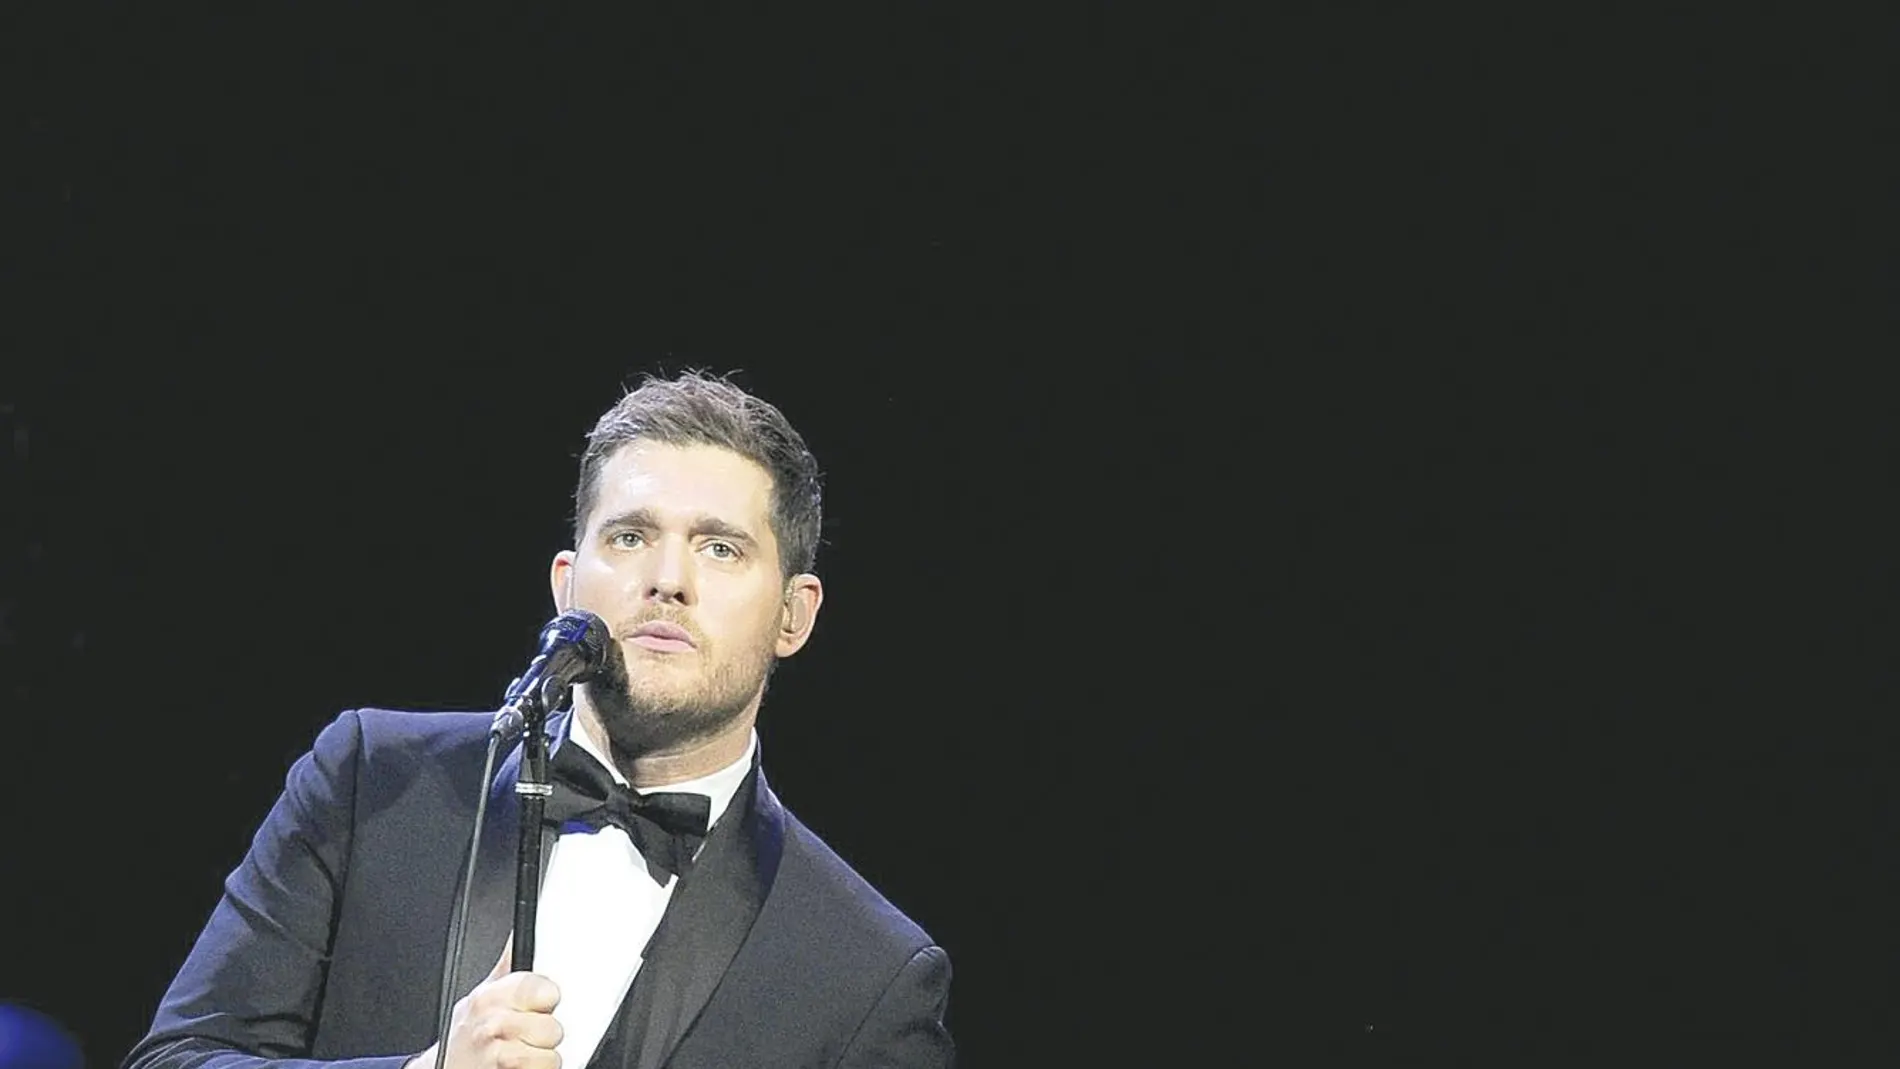 Michael Bublé en una reciente actuación en Estados Unidos, donde arrancó su gira de regreso